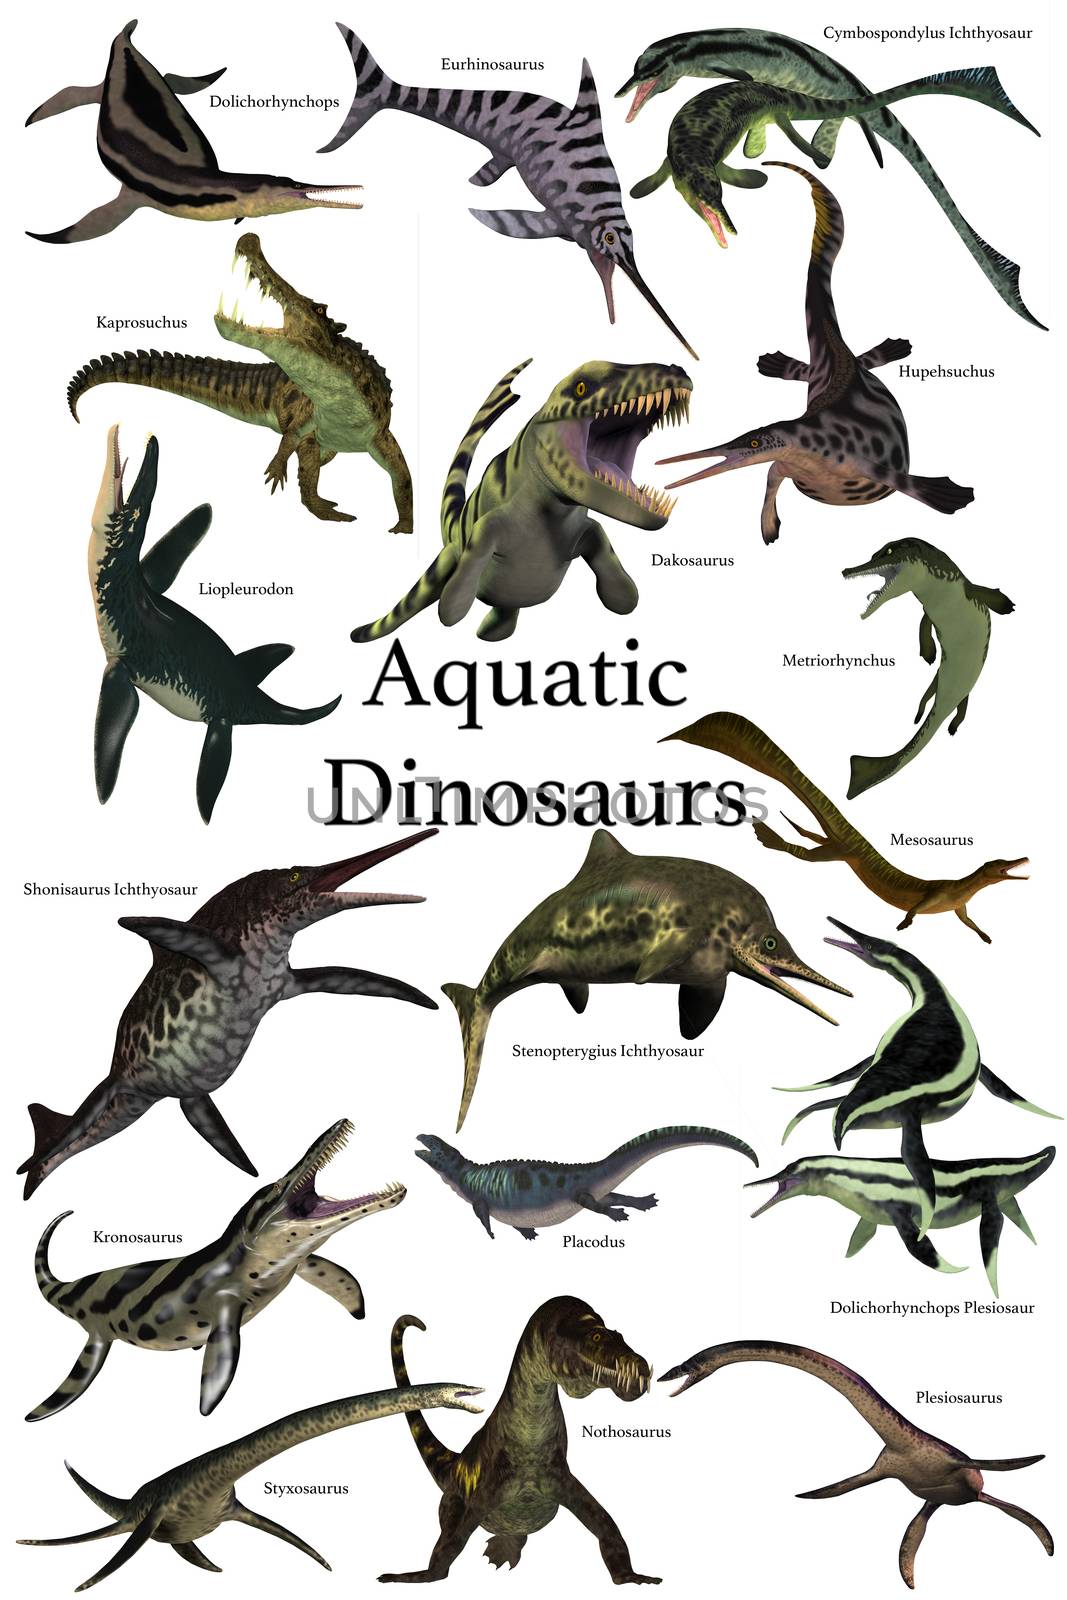 Aquatic Dinosaurs by Catmando